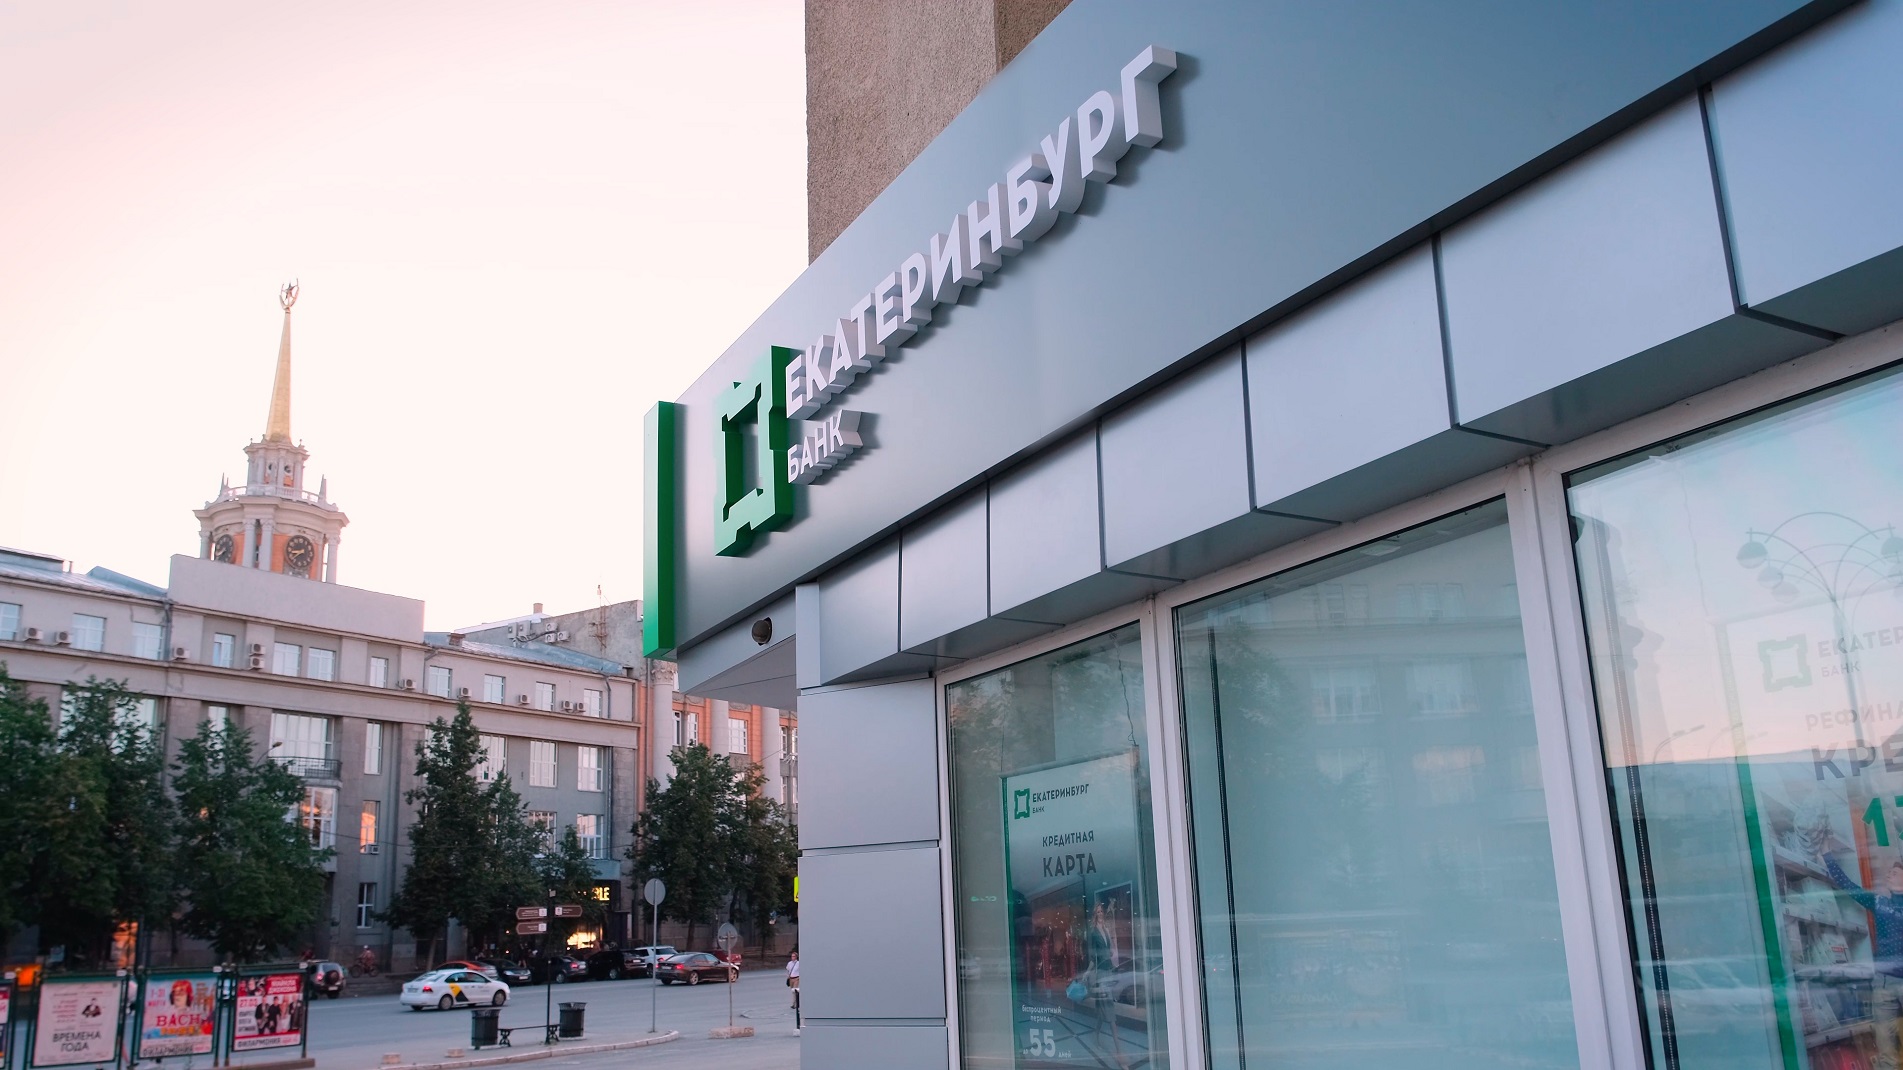 Екатеринбургский банк екатеринбург